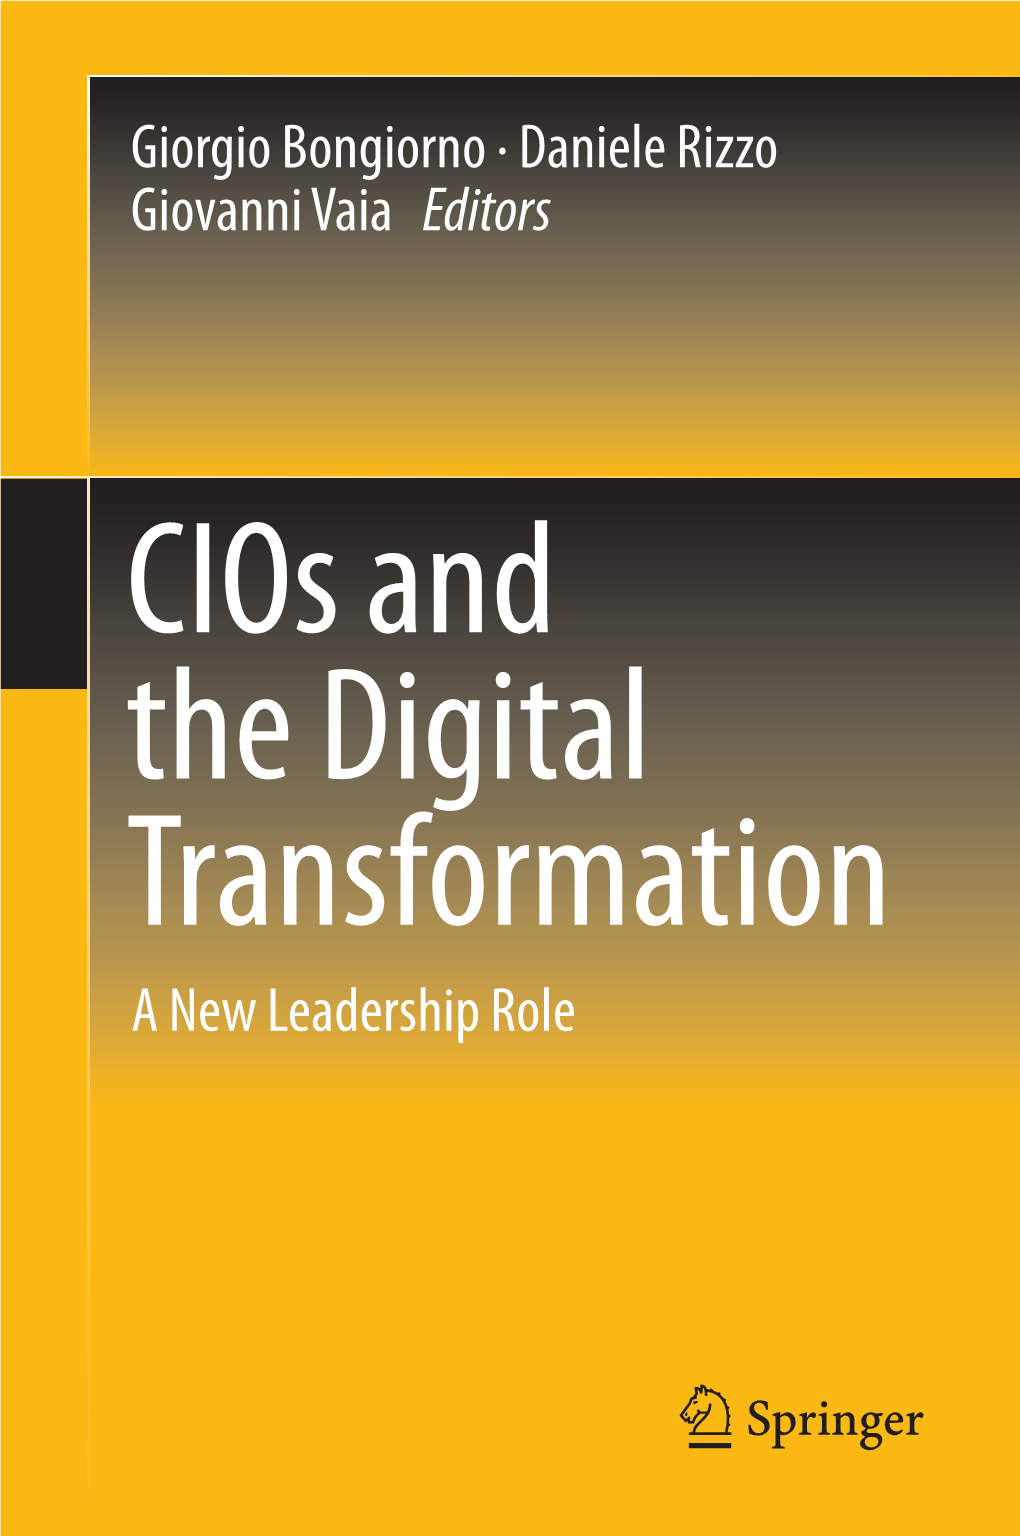 Cios and the Digital Transformation a New Leadership Role Cios and the Digital Transformation Giorgio Bongiorno • Daniele Rizzo Giovanni Vaia Editors